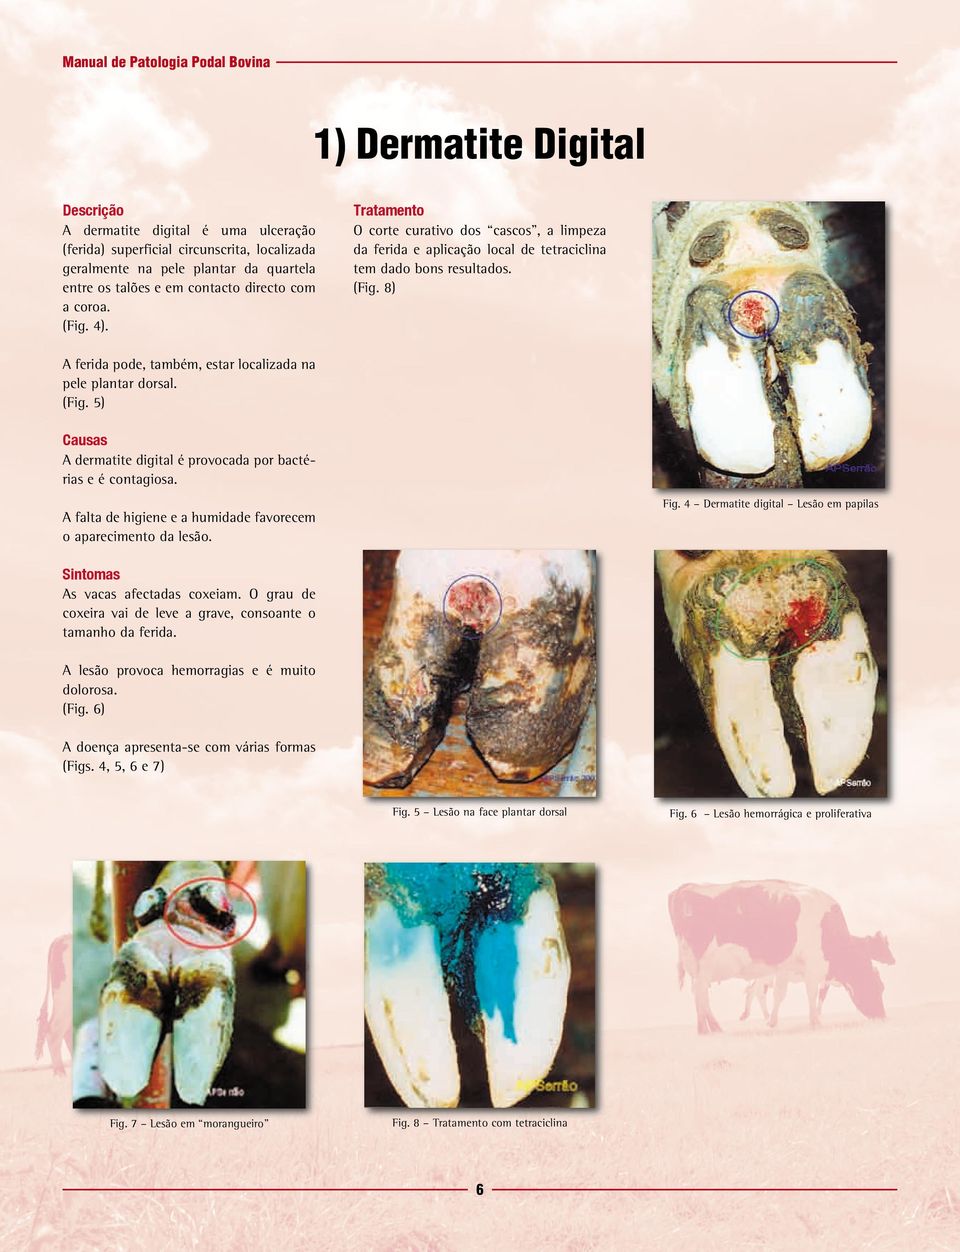 A falta de higiene e a humidade favorecem o aparecimento da lesão. Fig. 4 Dermatite digital Lesão em papilas As vacas afectadas coxeiam.